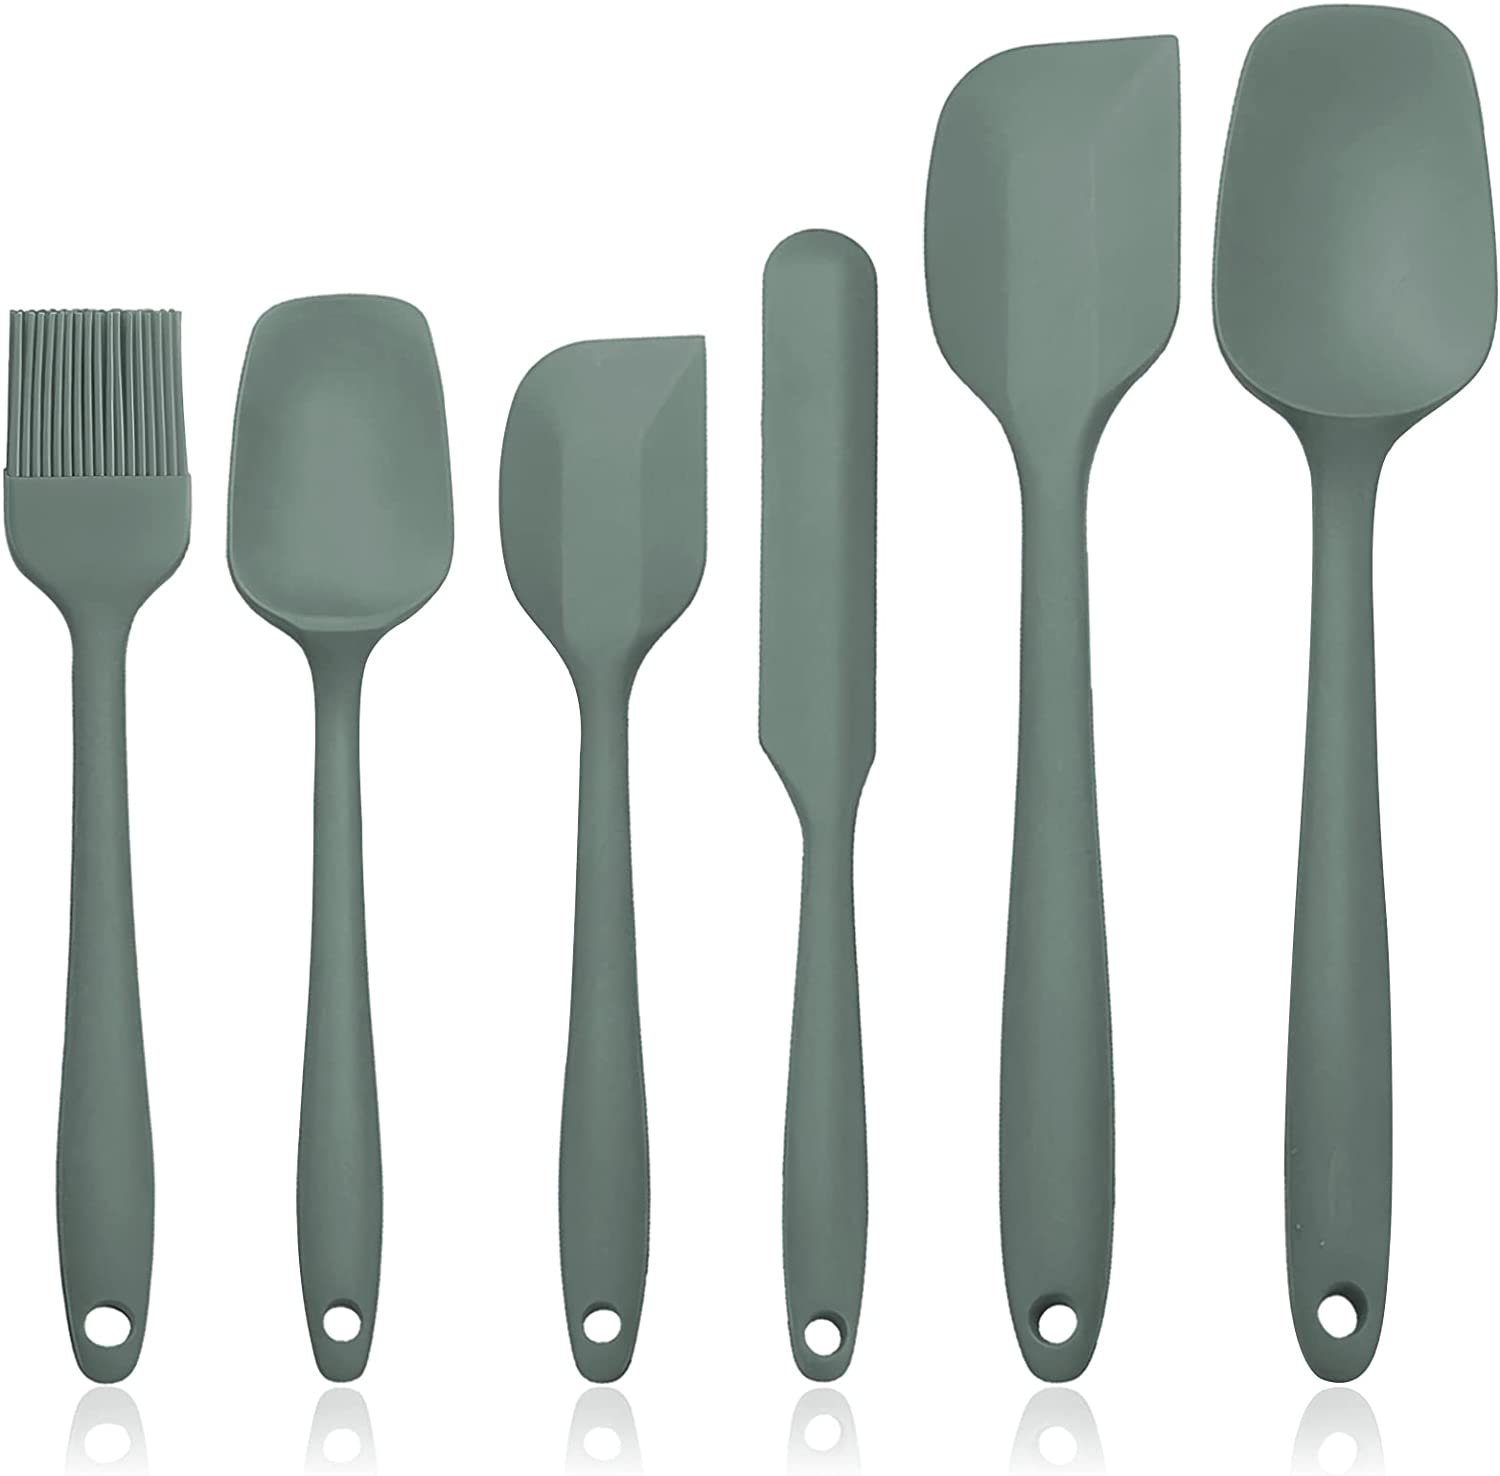 https://assets.wfcdn.com/im/16643530/compr-r85/2216/221646089/6-piece-silicone-assorted-kitchen-utensil-set.jpg